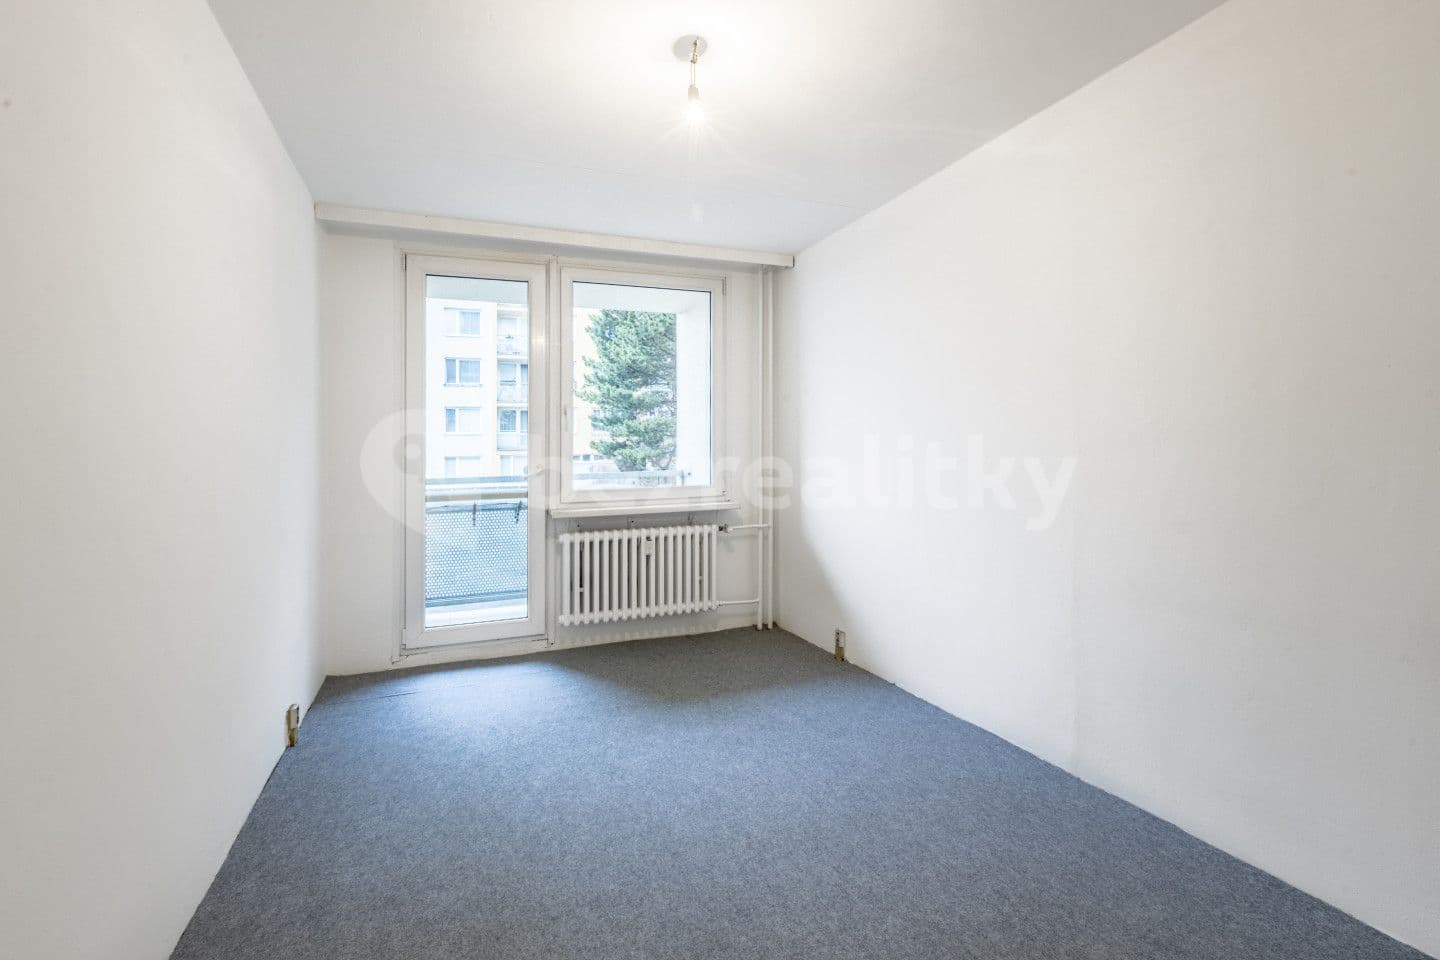 3 bedroom flat for sale, 64 m², Za návsí, Prague, Prague